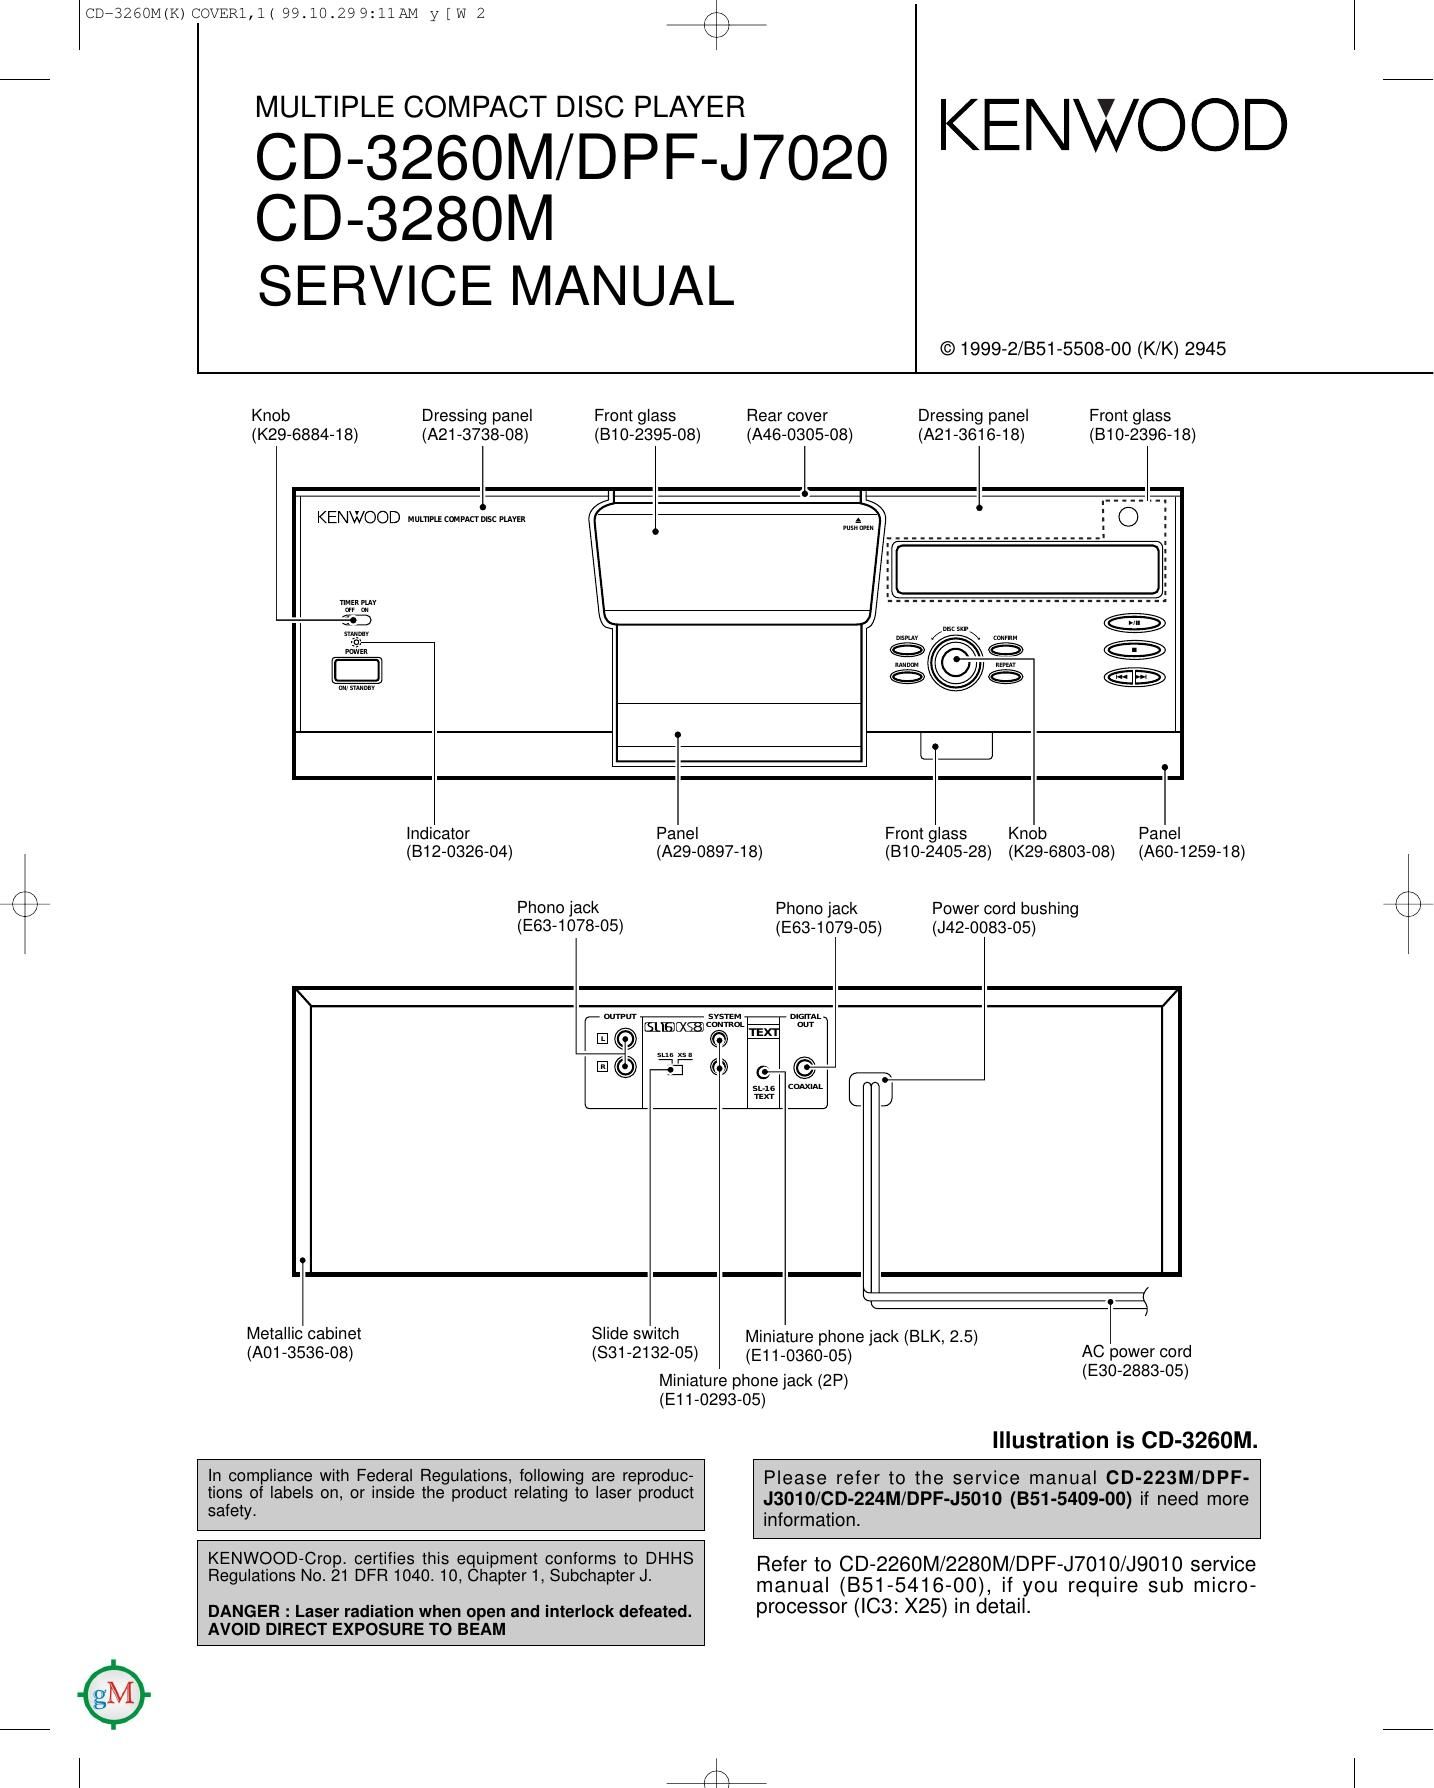 Kenwood CD 3280 M Service Manual